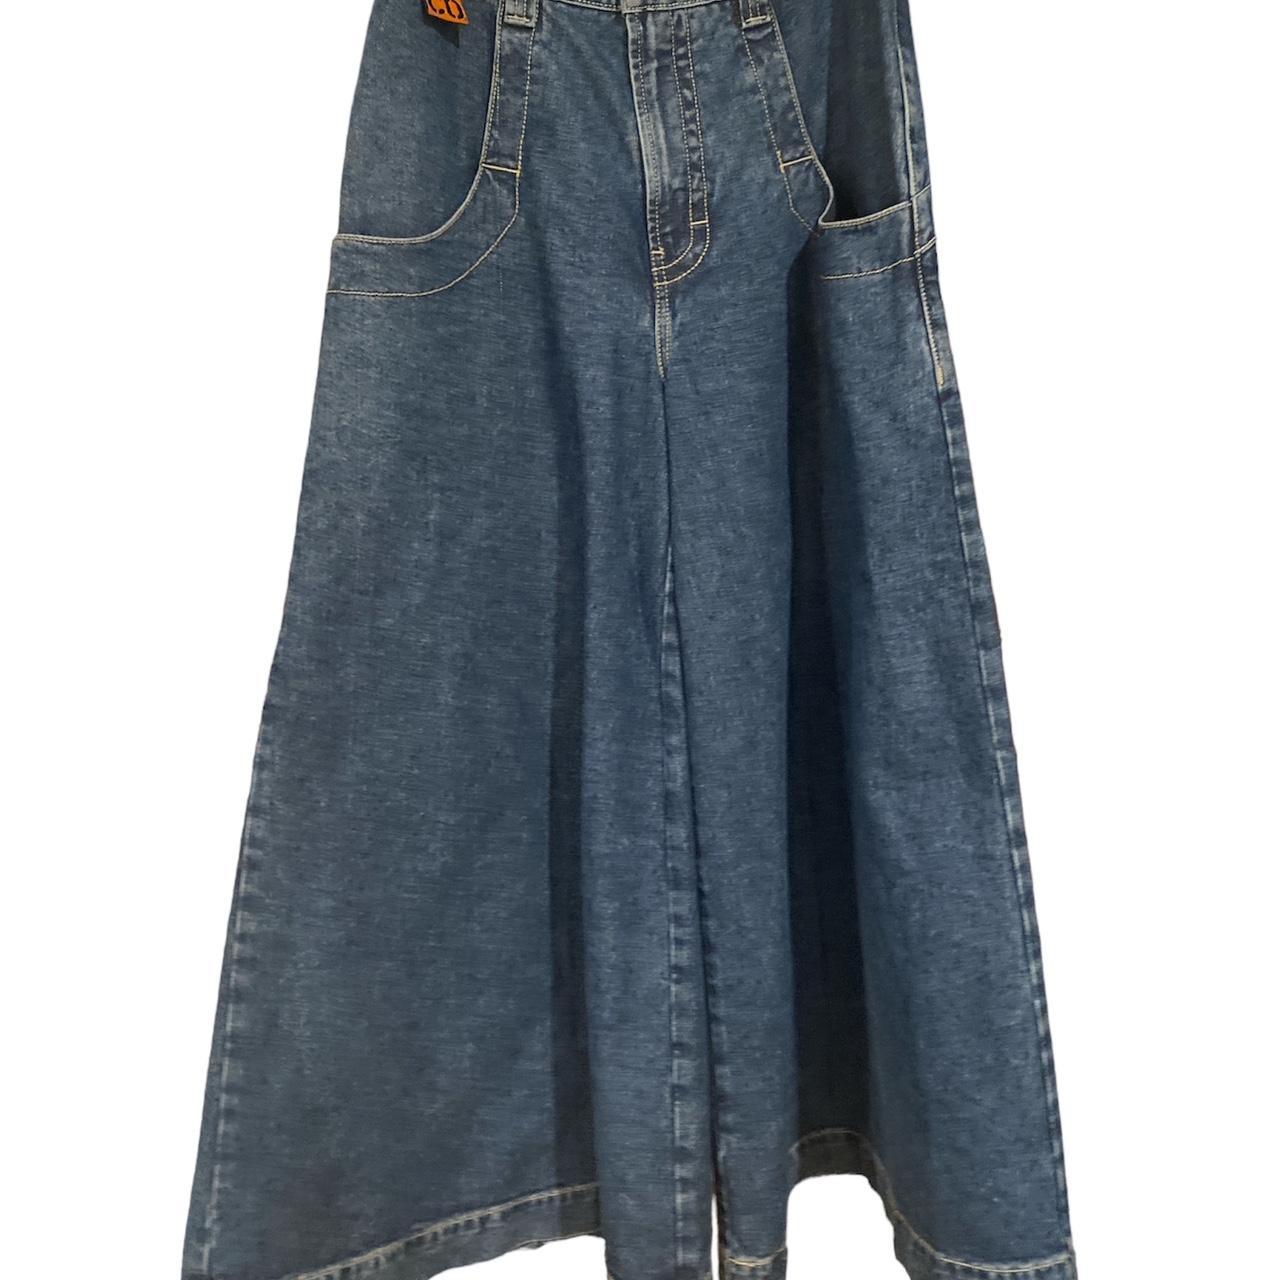 JNCO convict 50” dark wash jeans: waist 32 Length:... - Depop